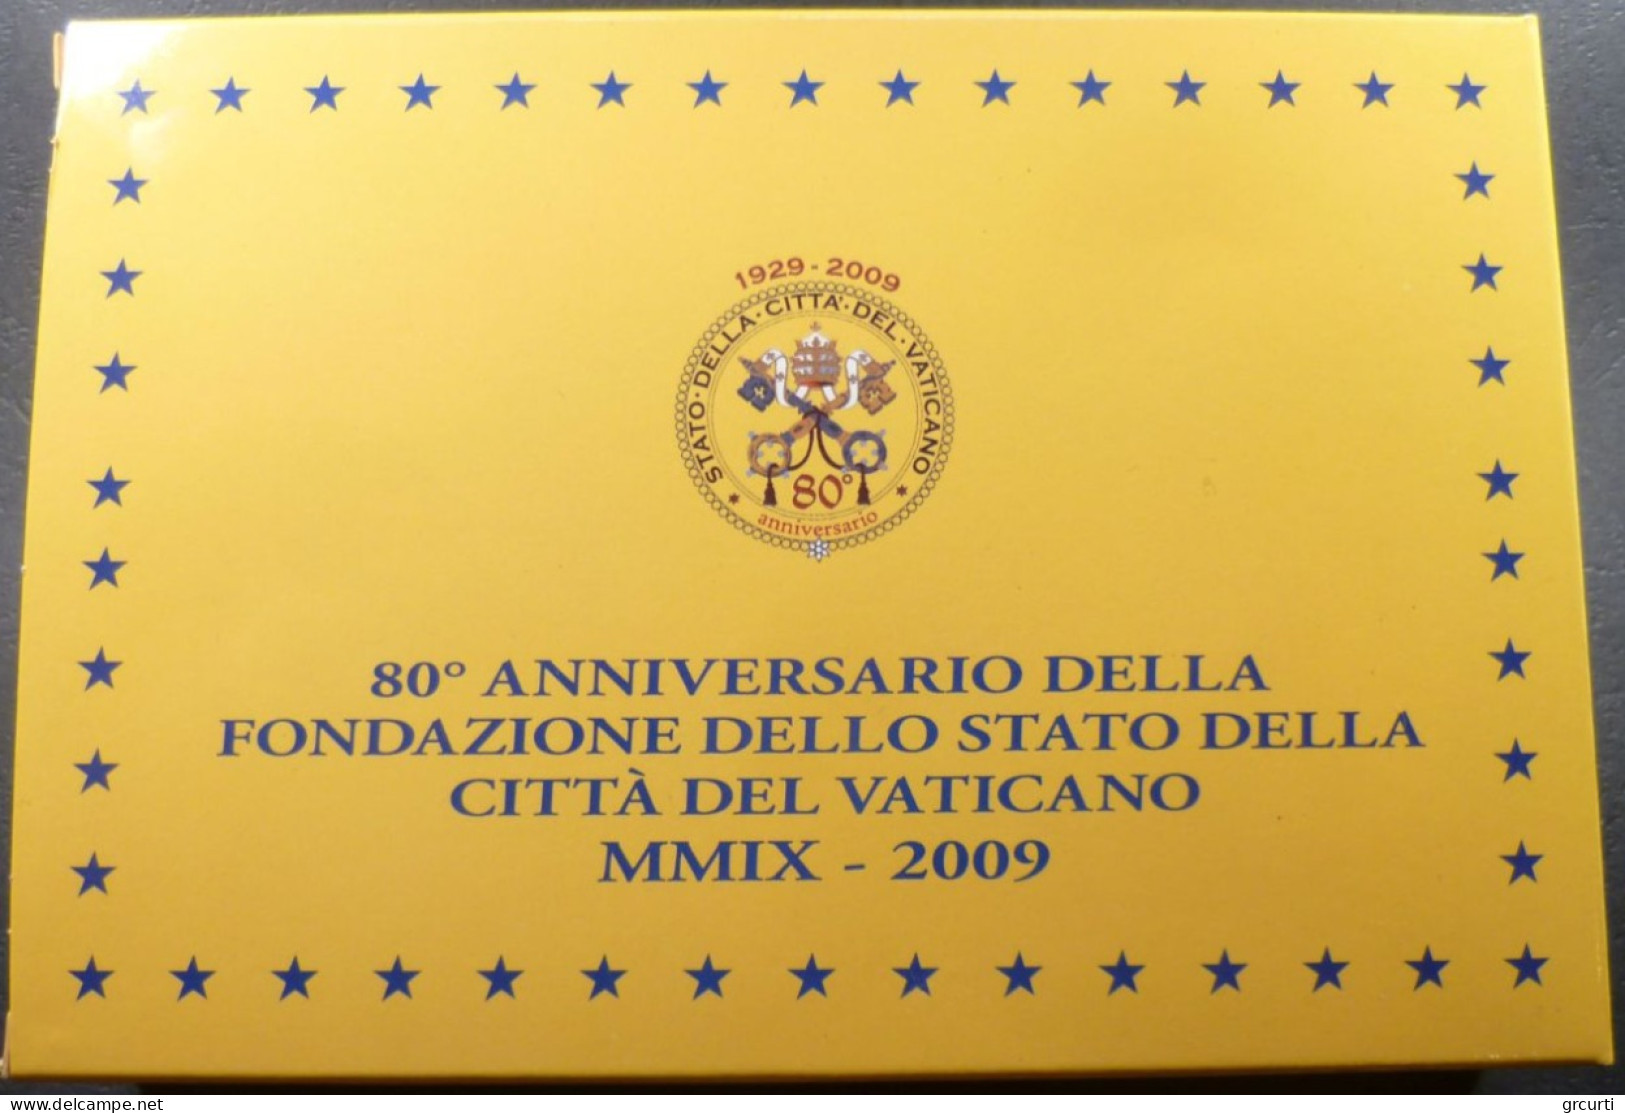 Vaticano - 2009 - Benedetto XVI - Serie zecca 8 valori fondo specchio - Con medaglia in argento